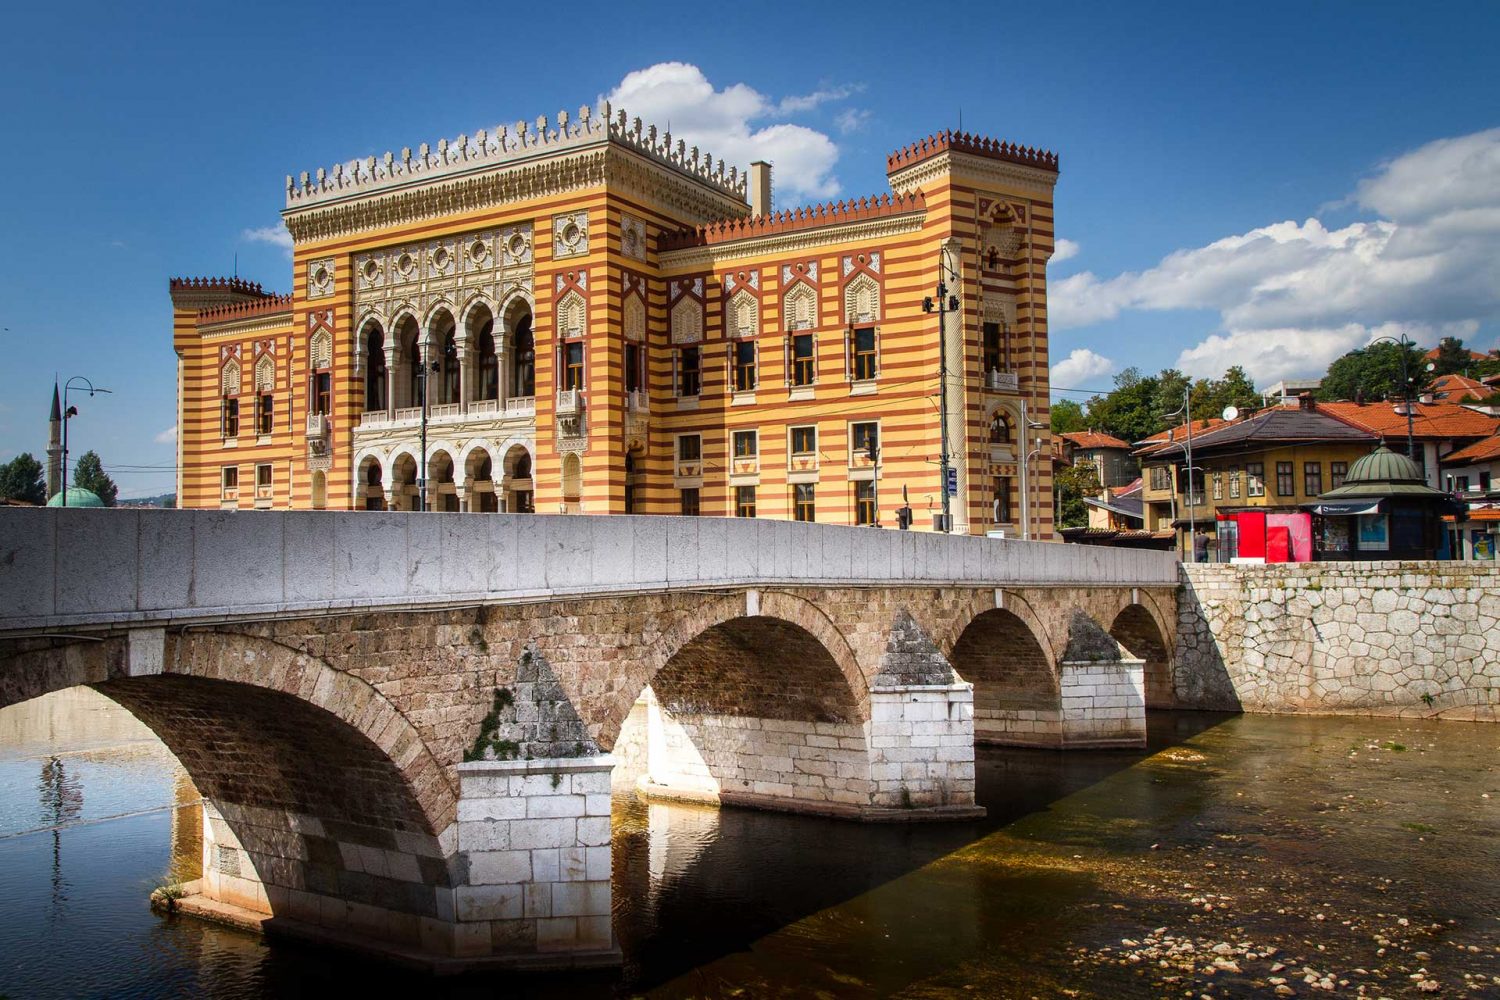 Sarajevo City Hall